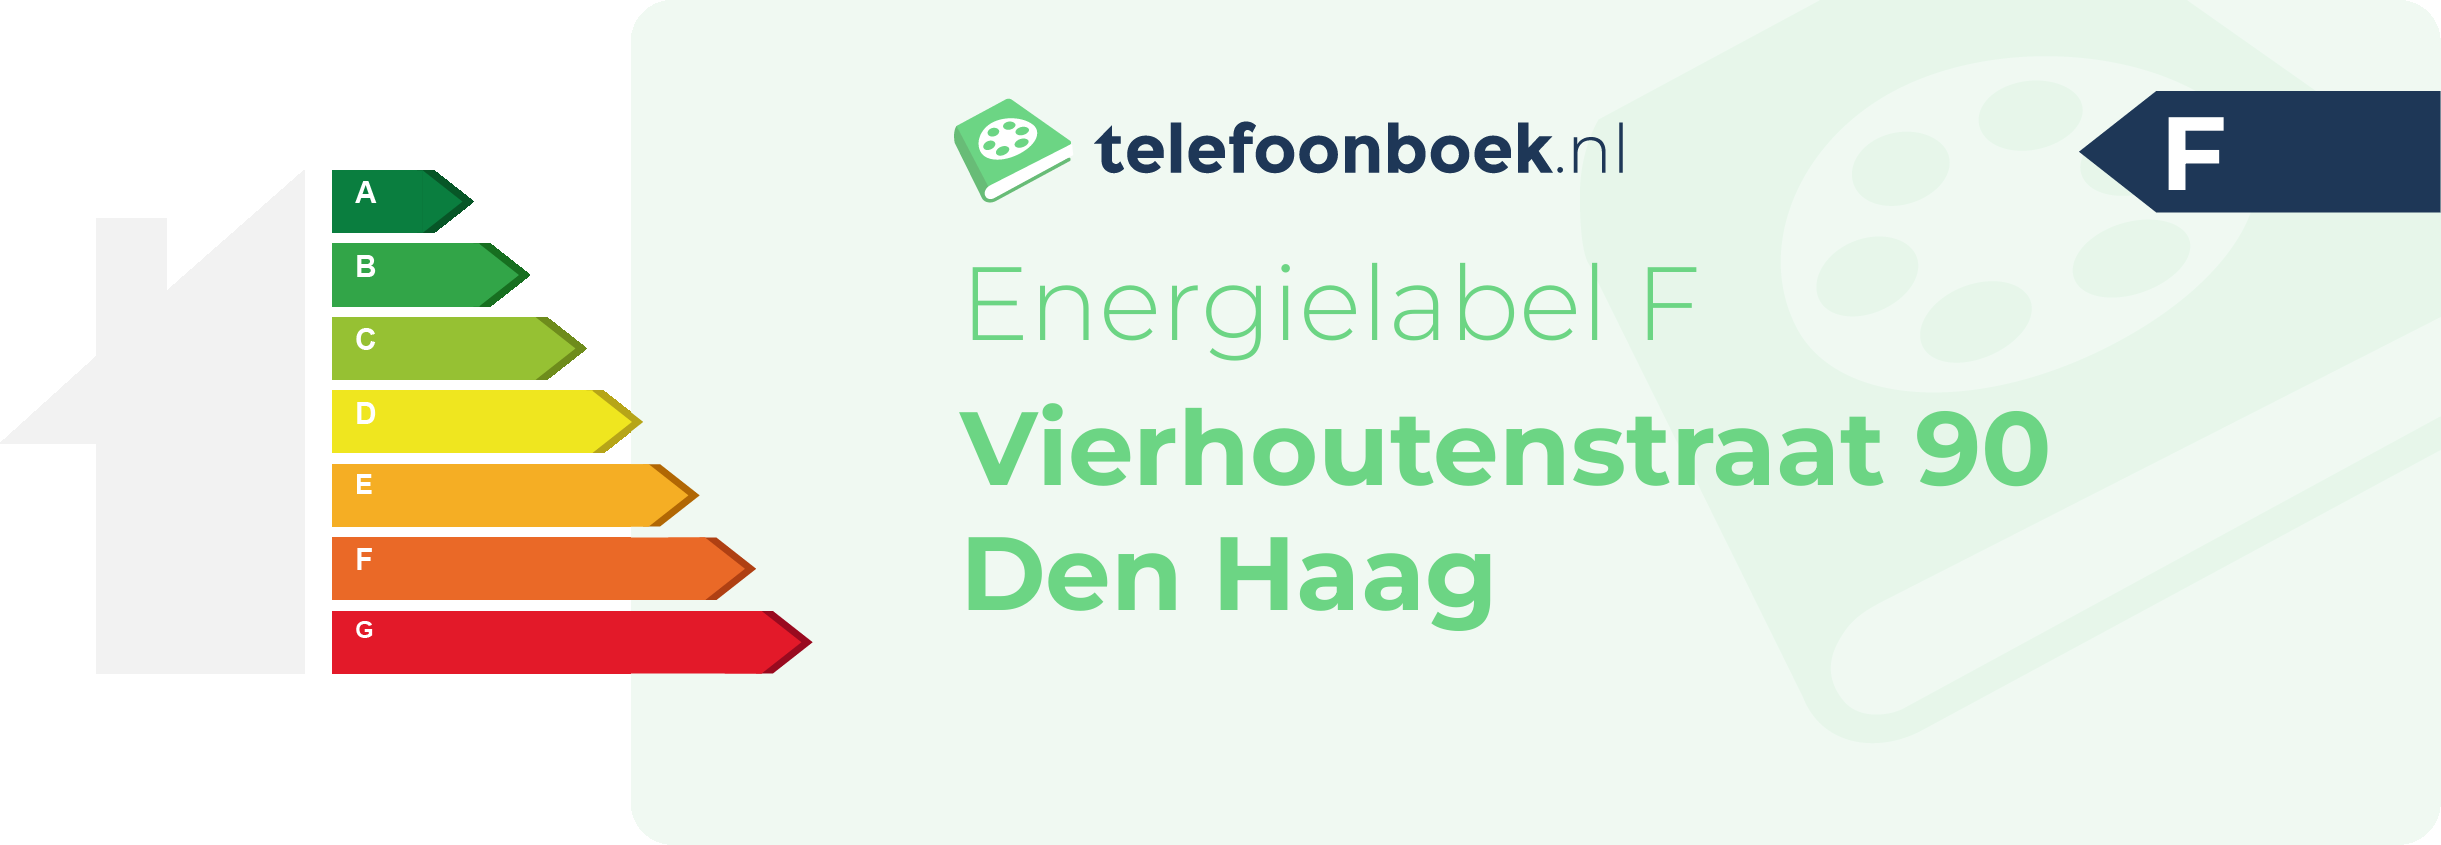 Energielabel Vierhoutenstraat 90 Den Haag